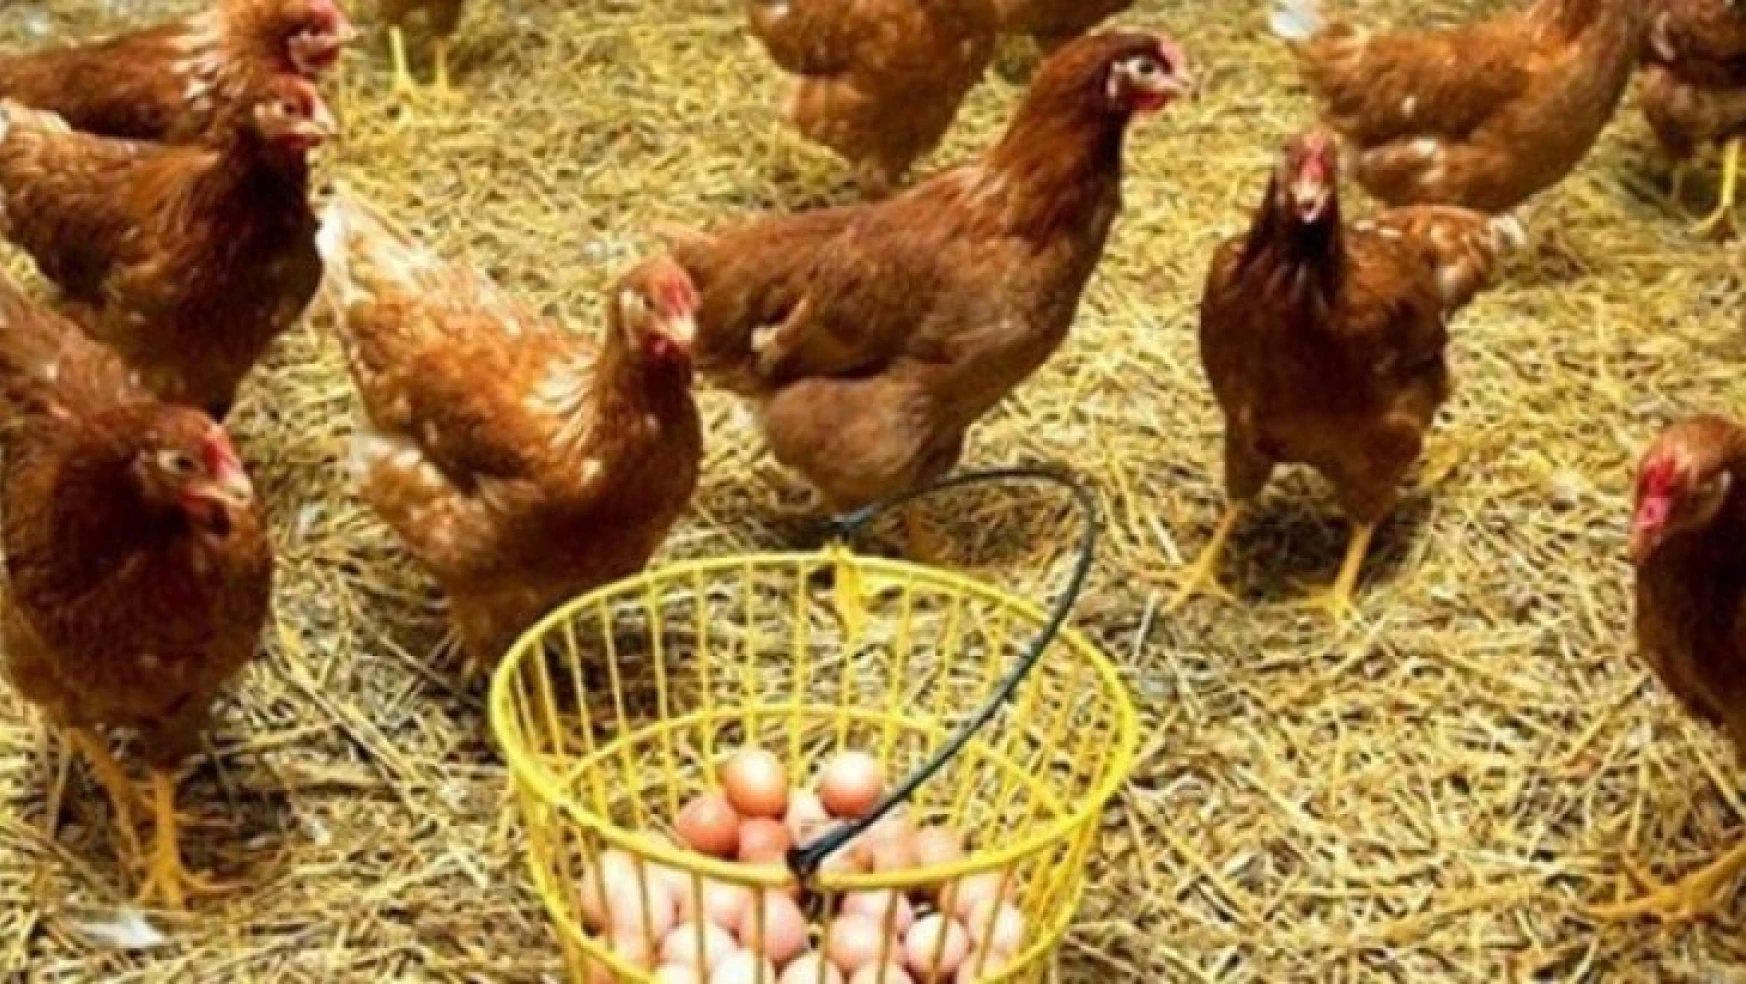 Tavuk yumurtası üretimi 1,7 milyar adet olarak gerçekleşti